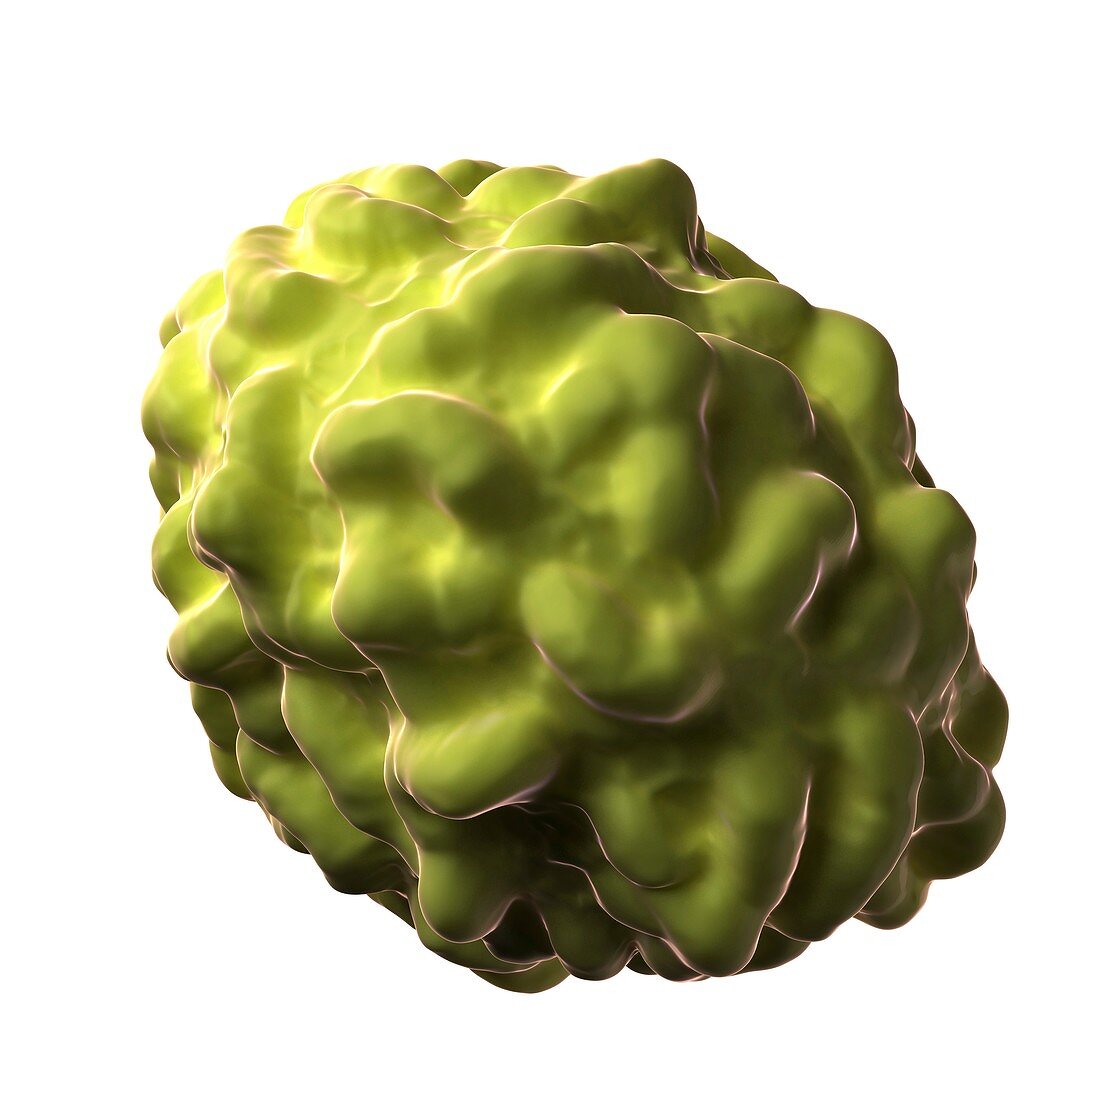 Smallpox virus particle